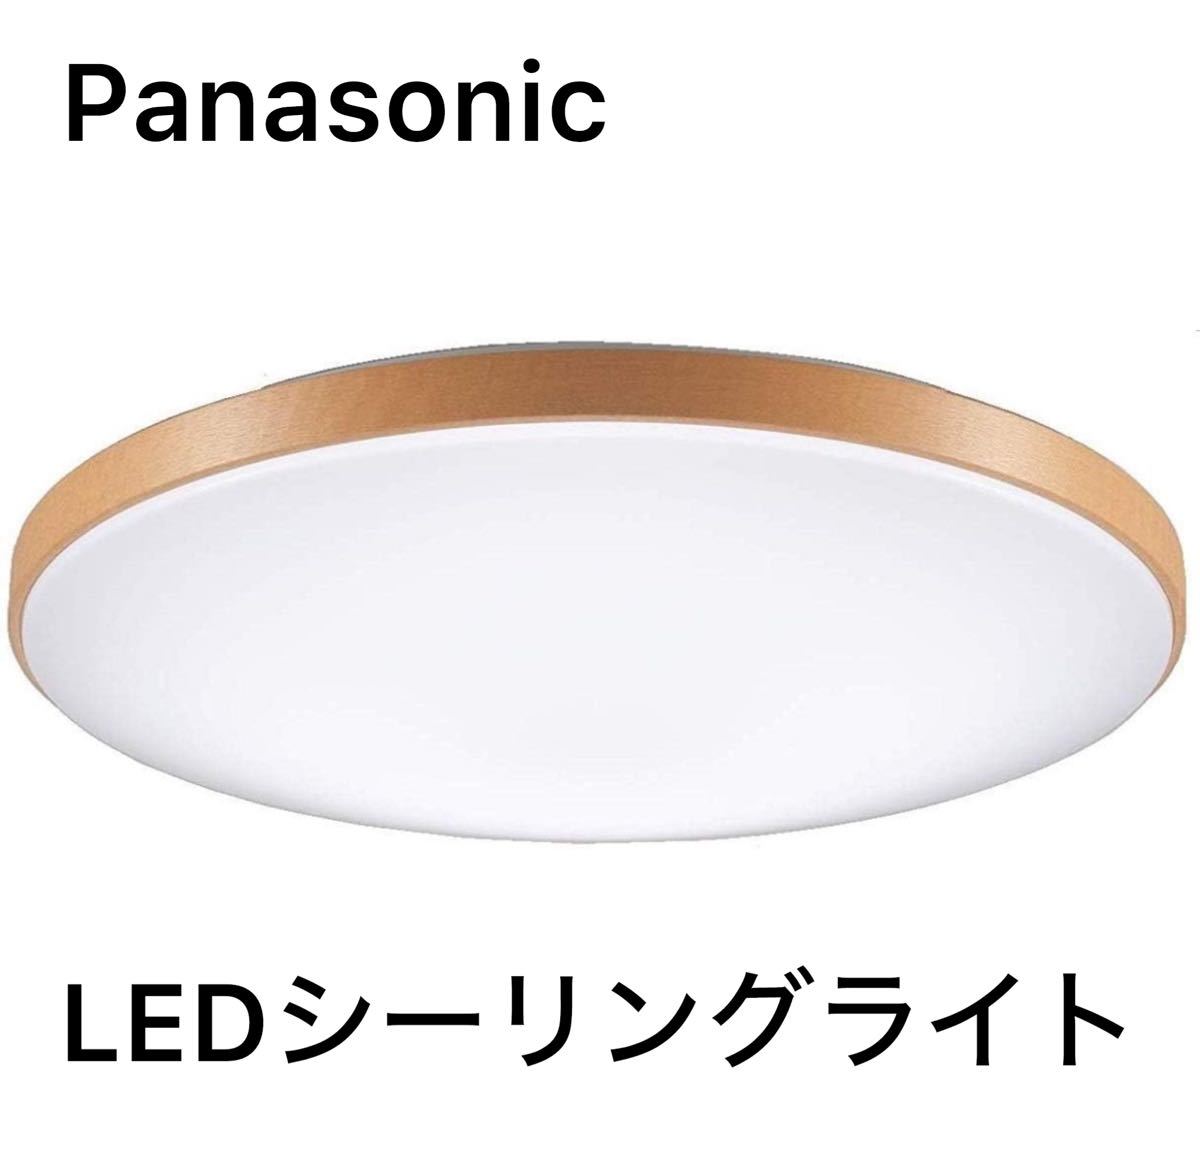 Panasonic パナソニック LEDシーリングライト 調光・調色タイプ リモコン付 ~8畳 ミディアムブラウン仕上 HH-CD0819AH_画像1